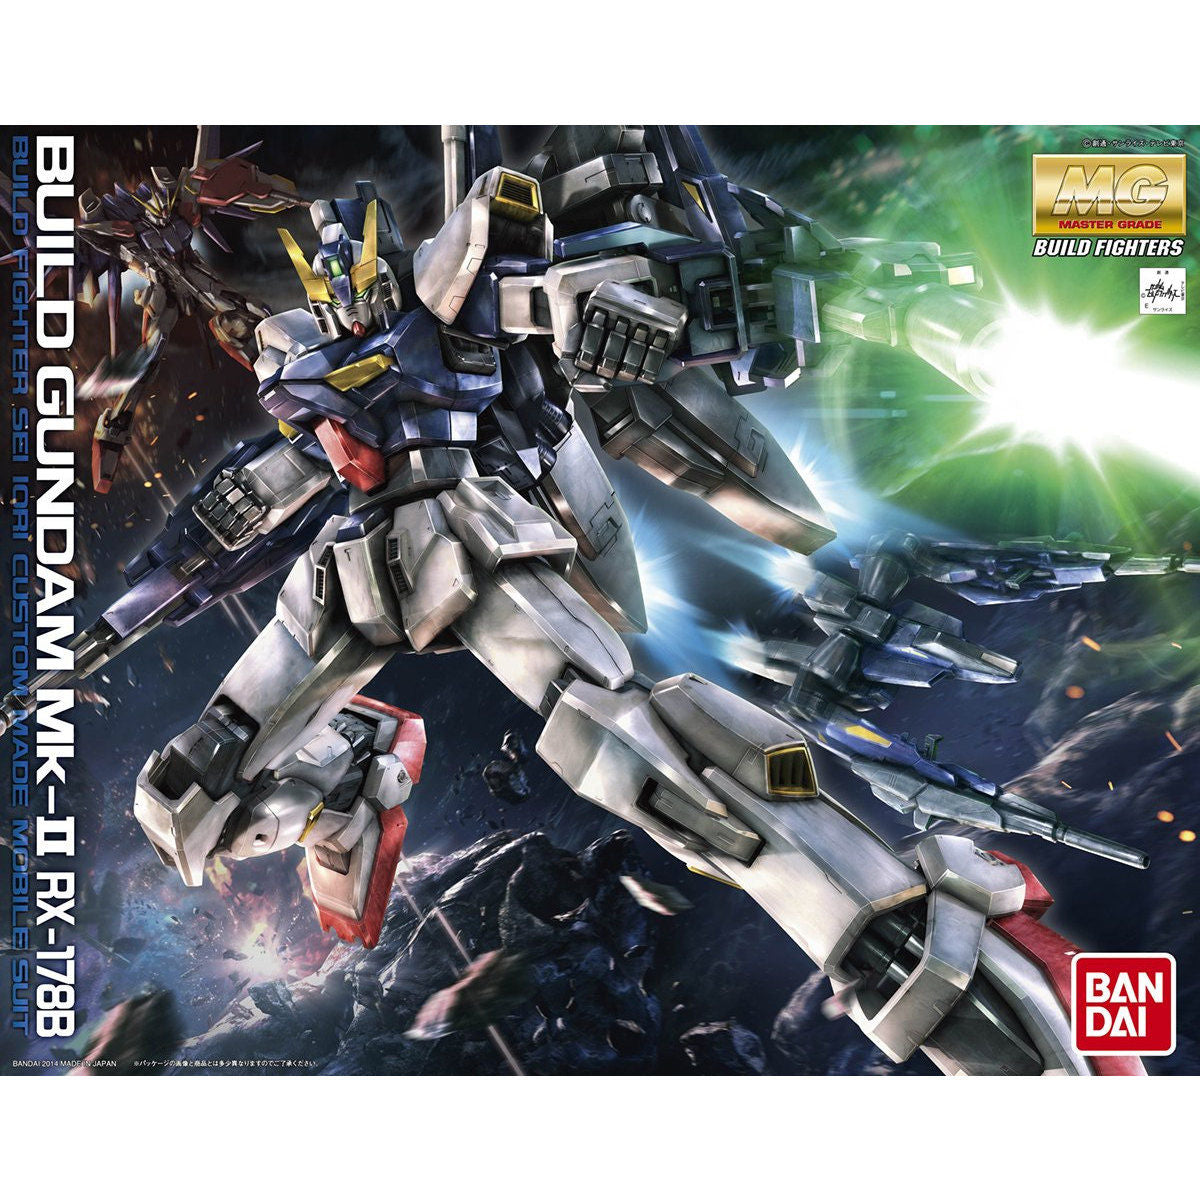 BANDAI Hobby MG 1/100 Build Gundam Mk-II